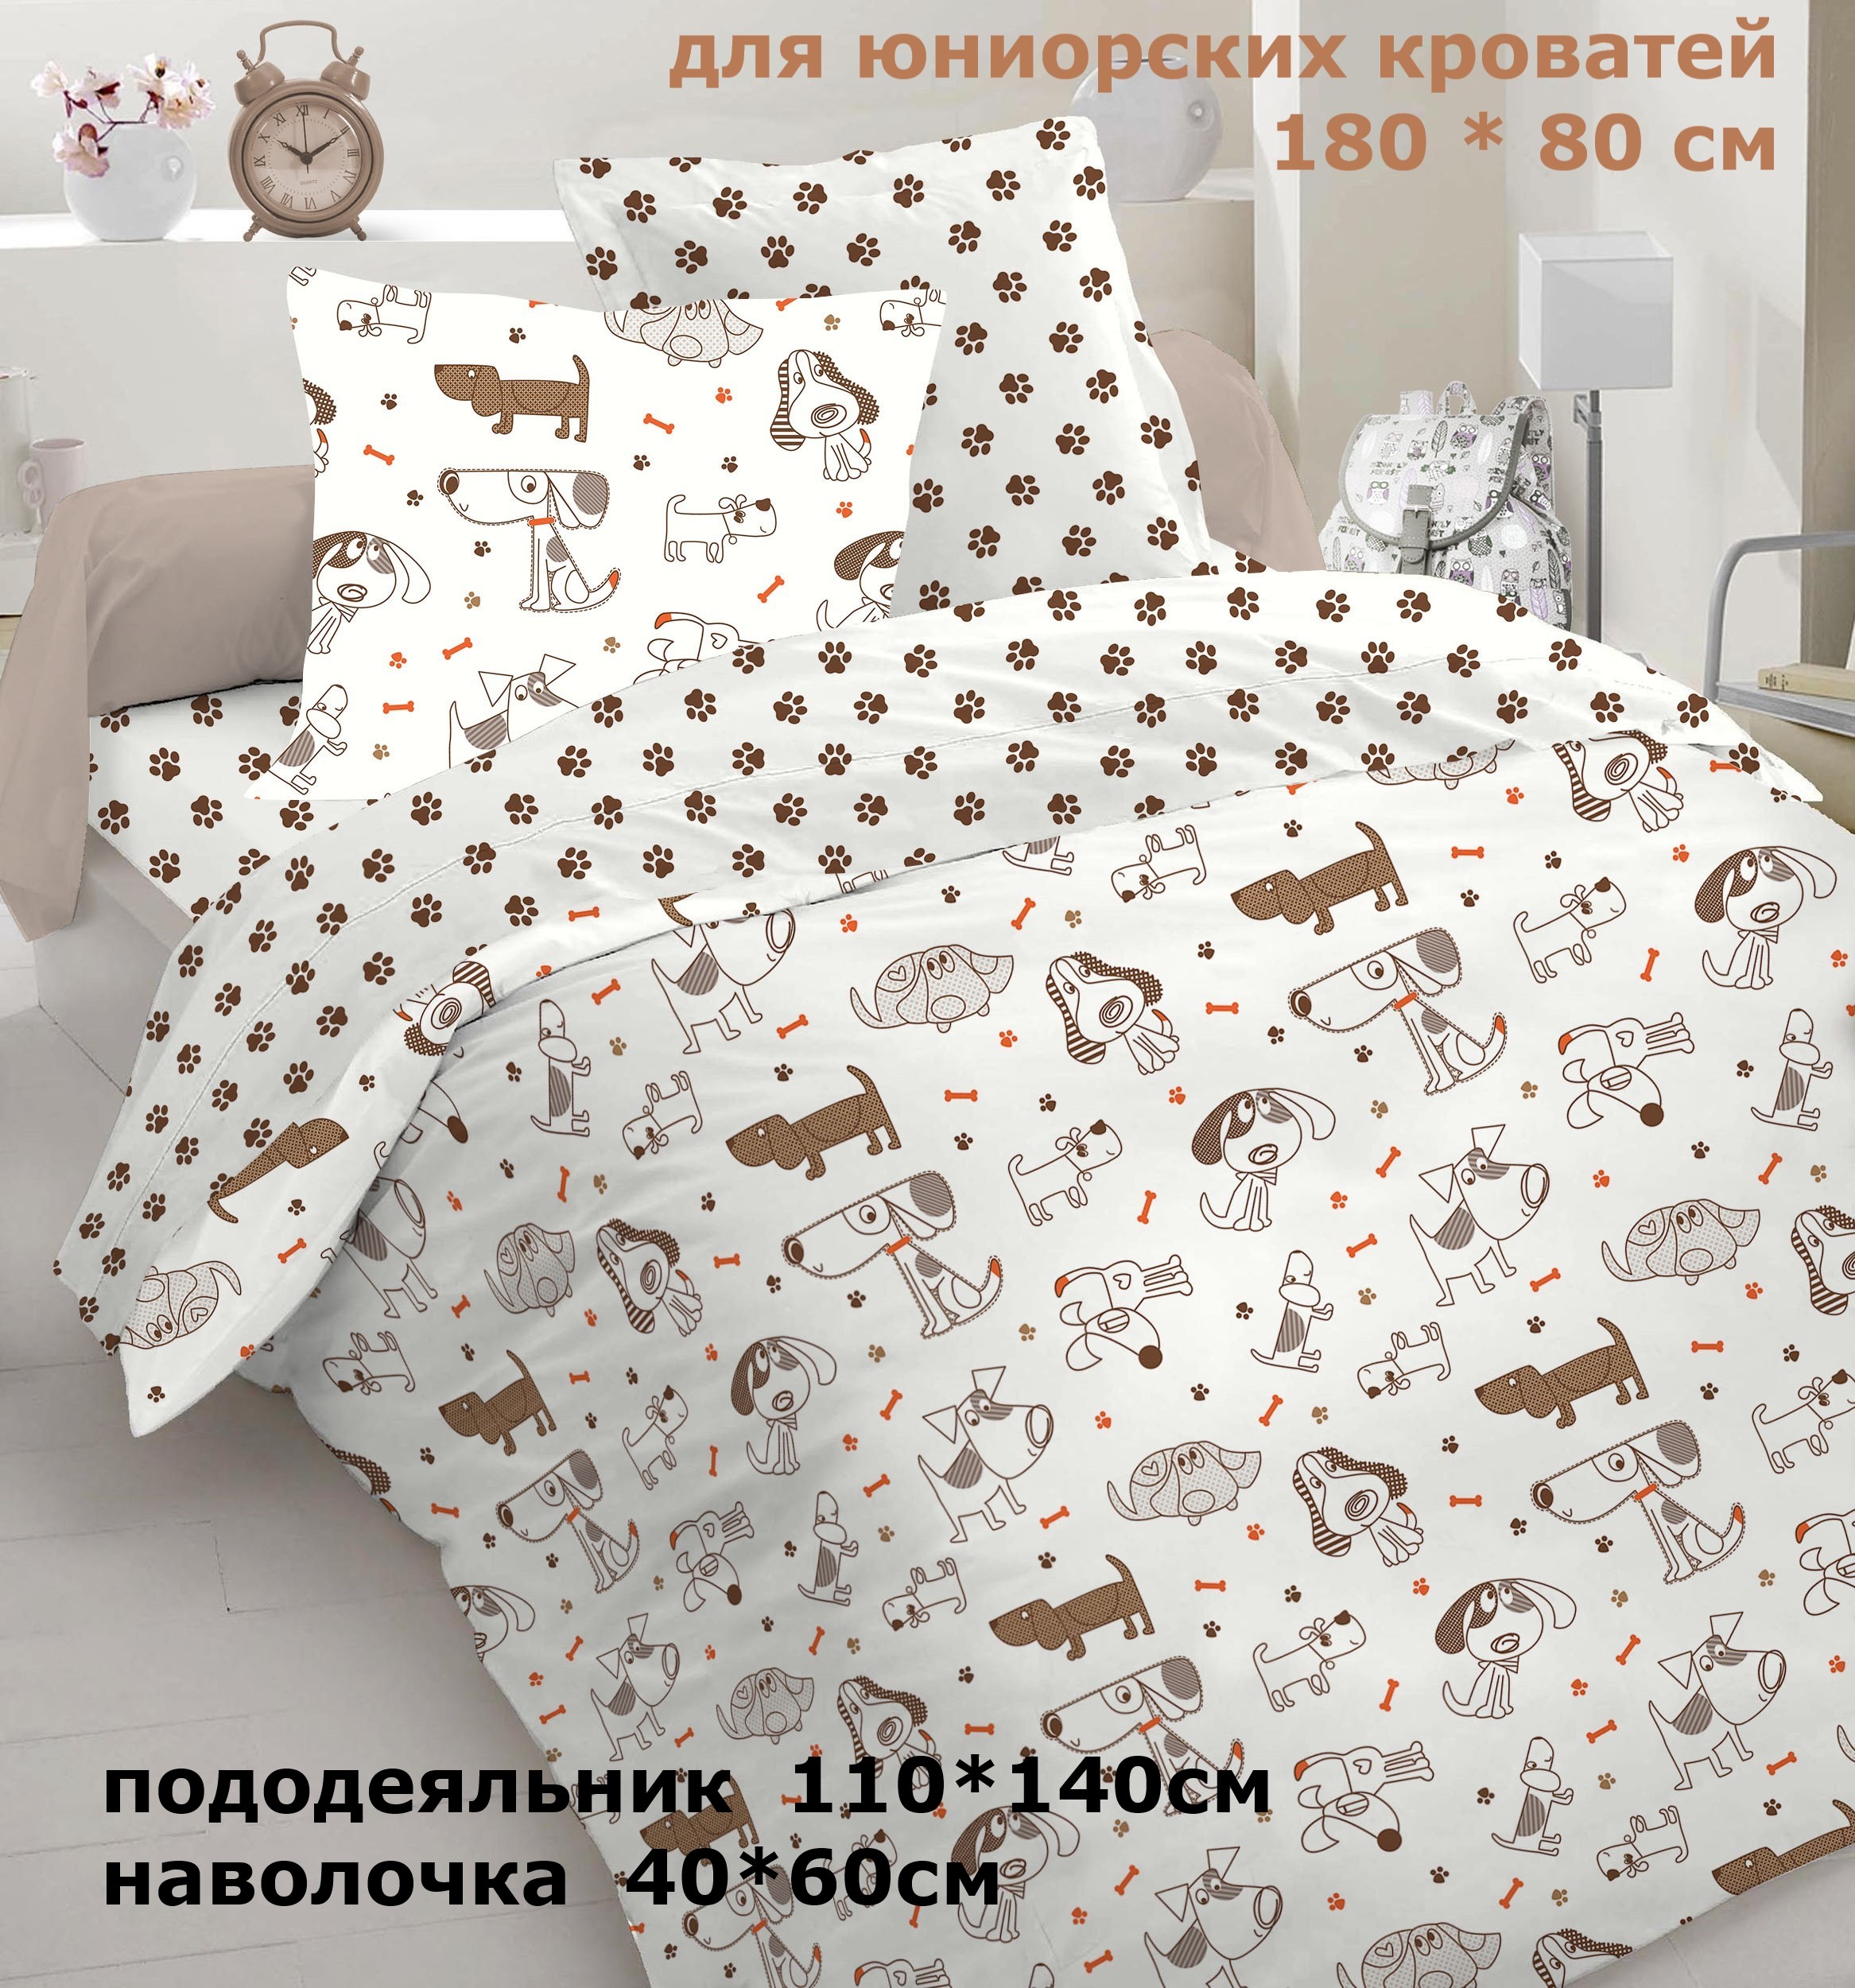 Комплект постельного белья Велли для подростков, Собачки комплект детского постельного белья rant nuts 3 предмета белый коричневый 3 005